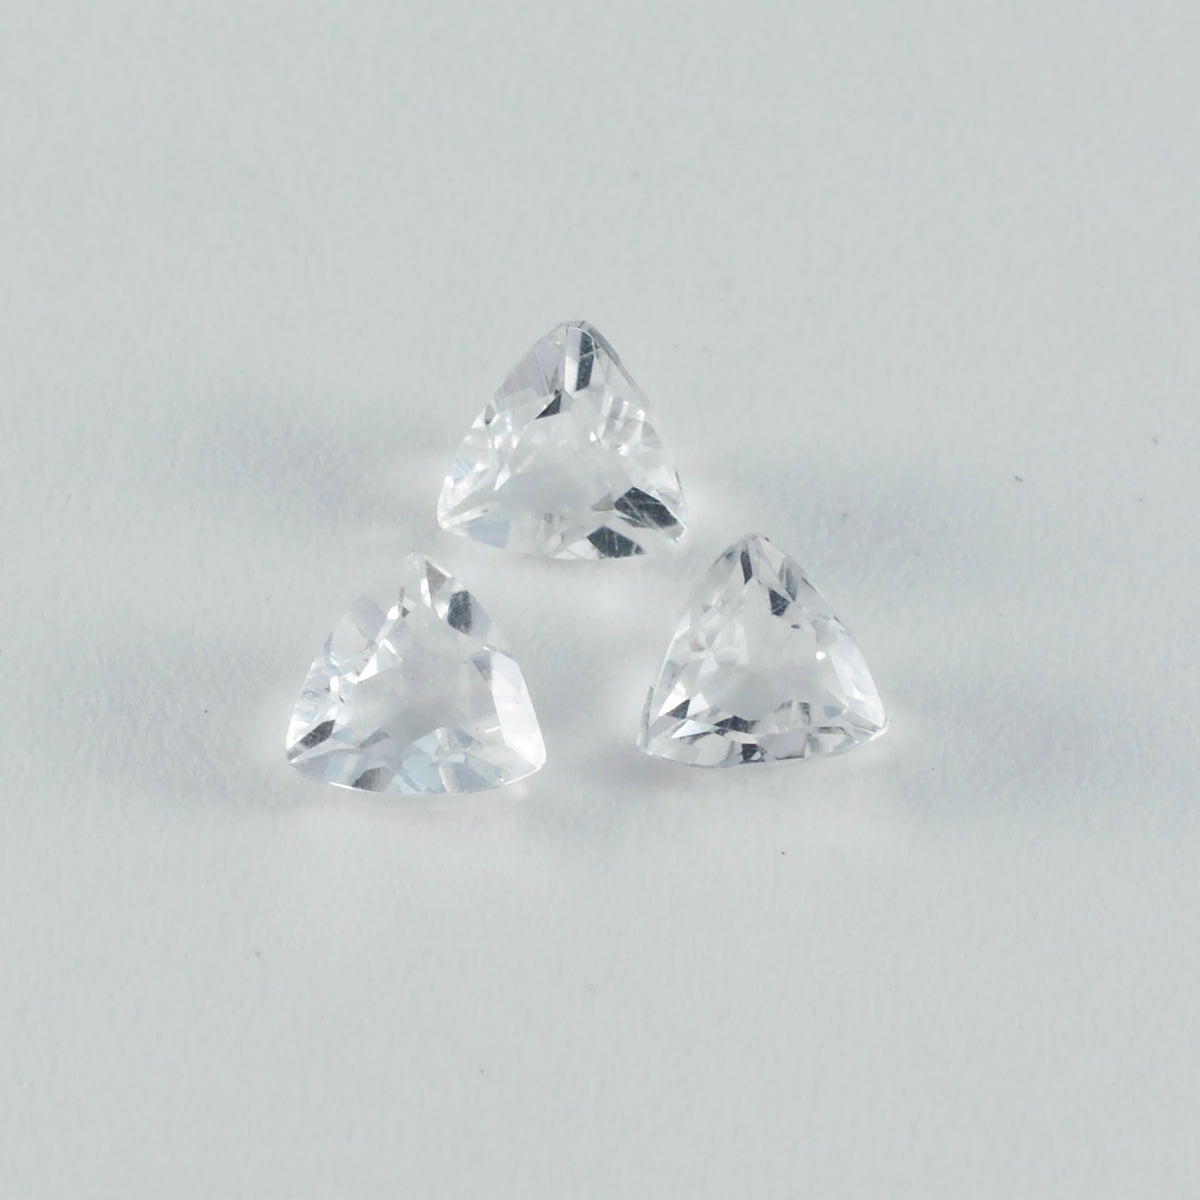 riyogems 1 шт., белый кристалл кварца, ограненный, 10x10 мм, форма триллиона, удивительное качество, свободный камень